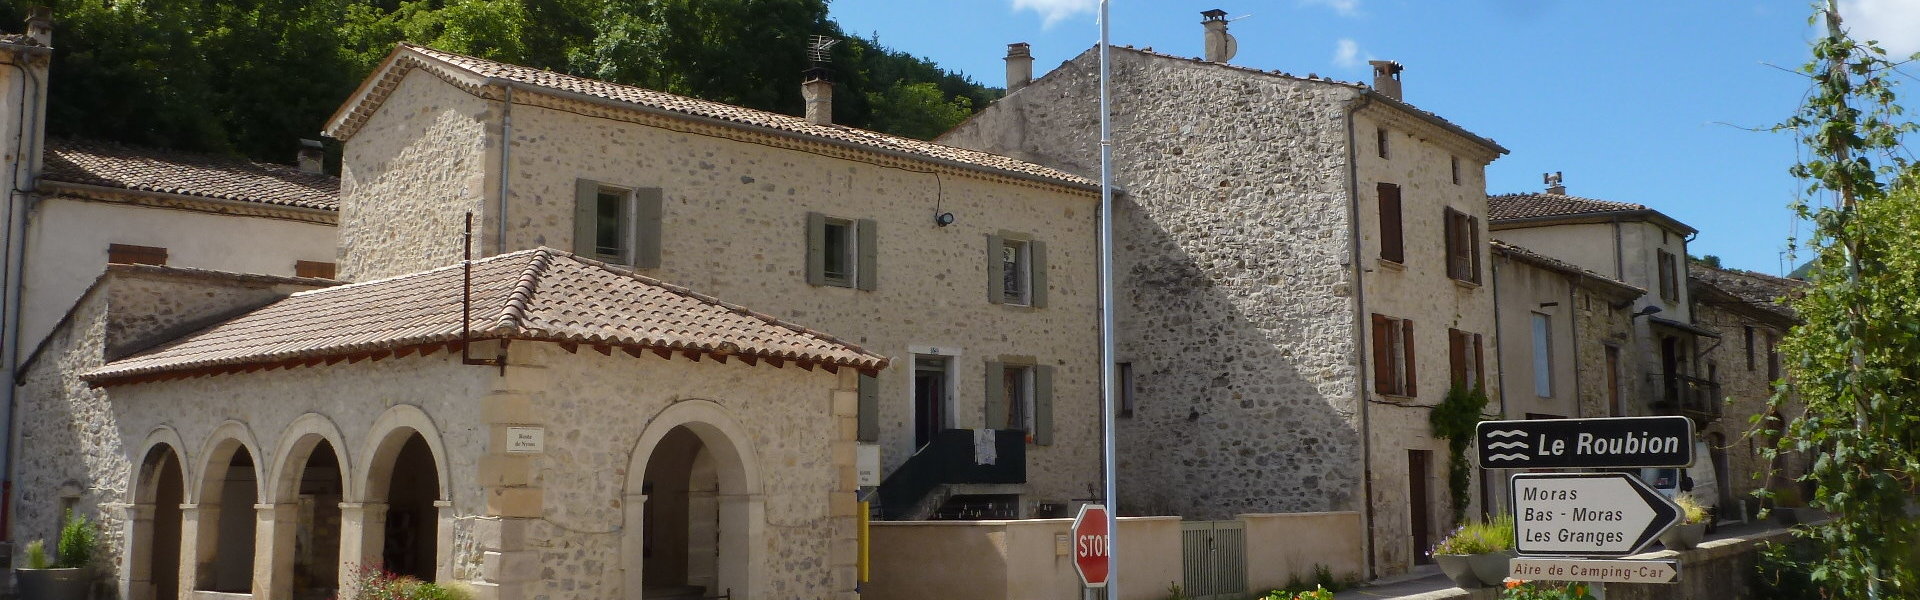 Histoire de la commune - Commune de Bouvières - Département de la Drôme